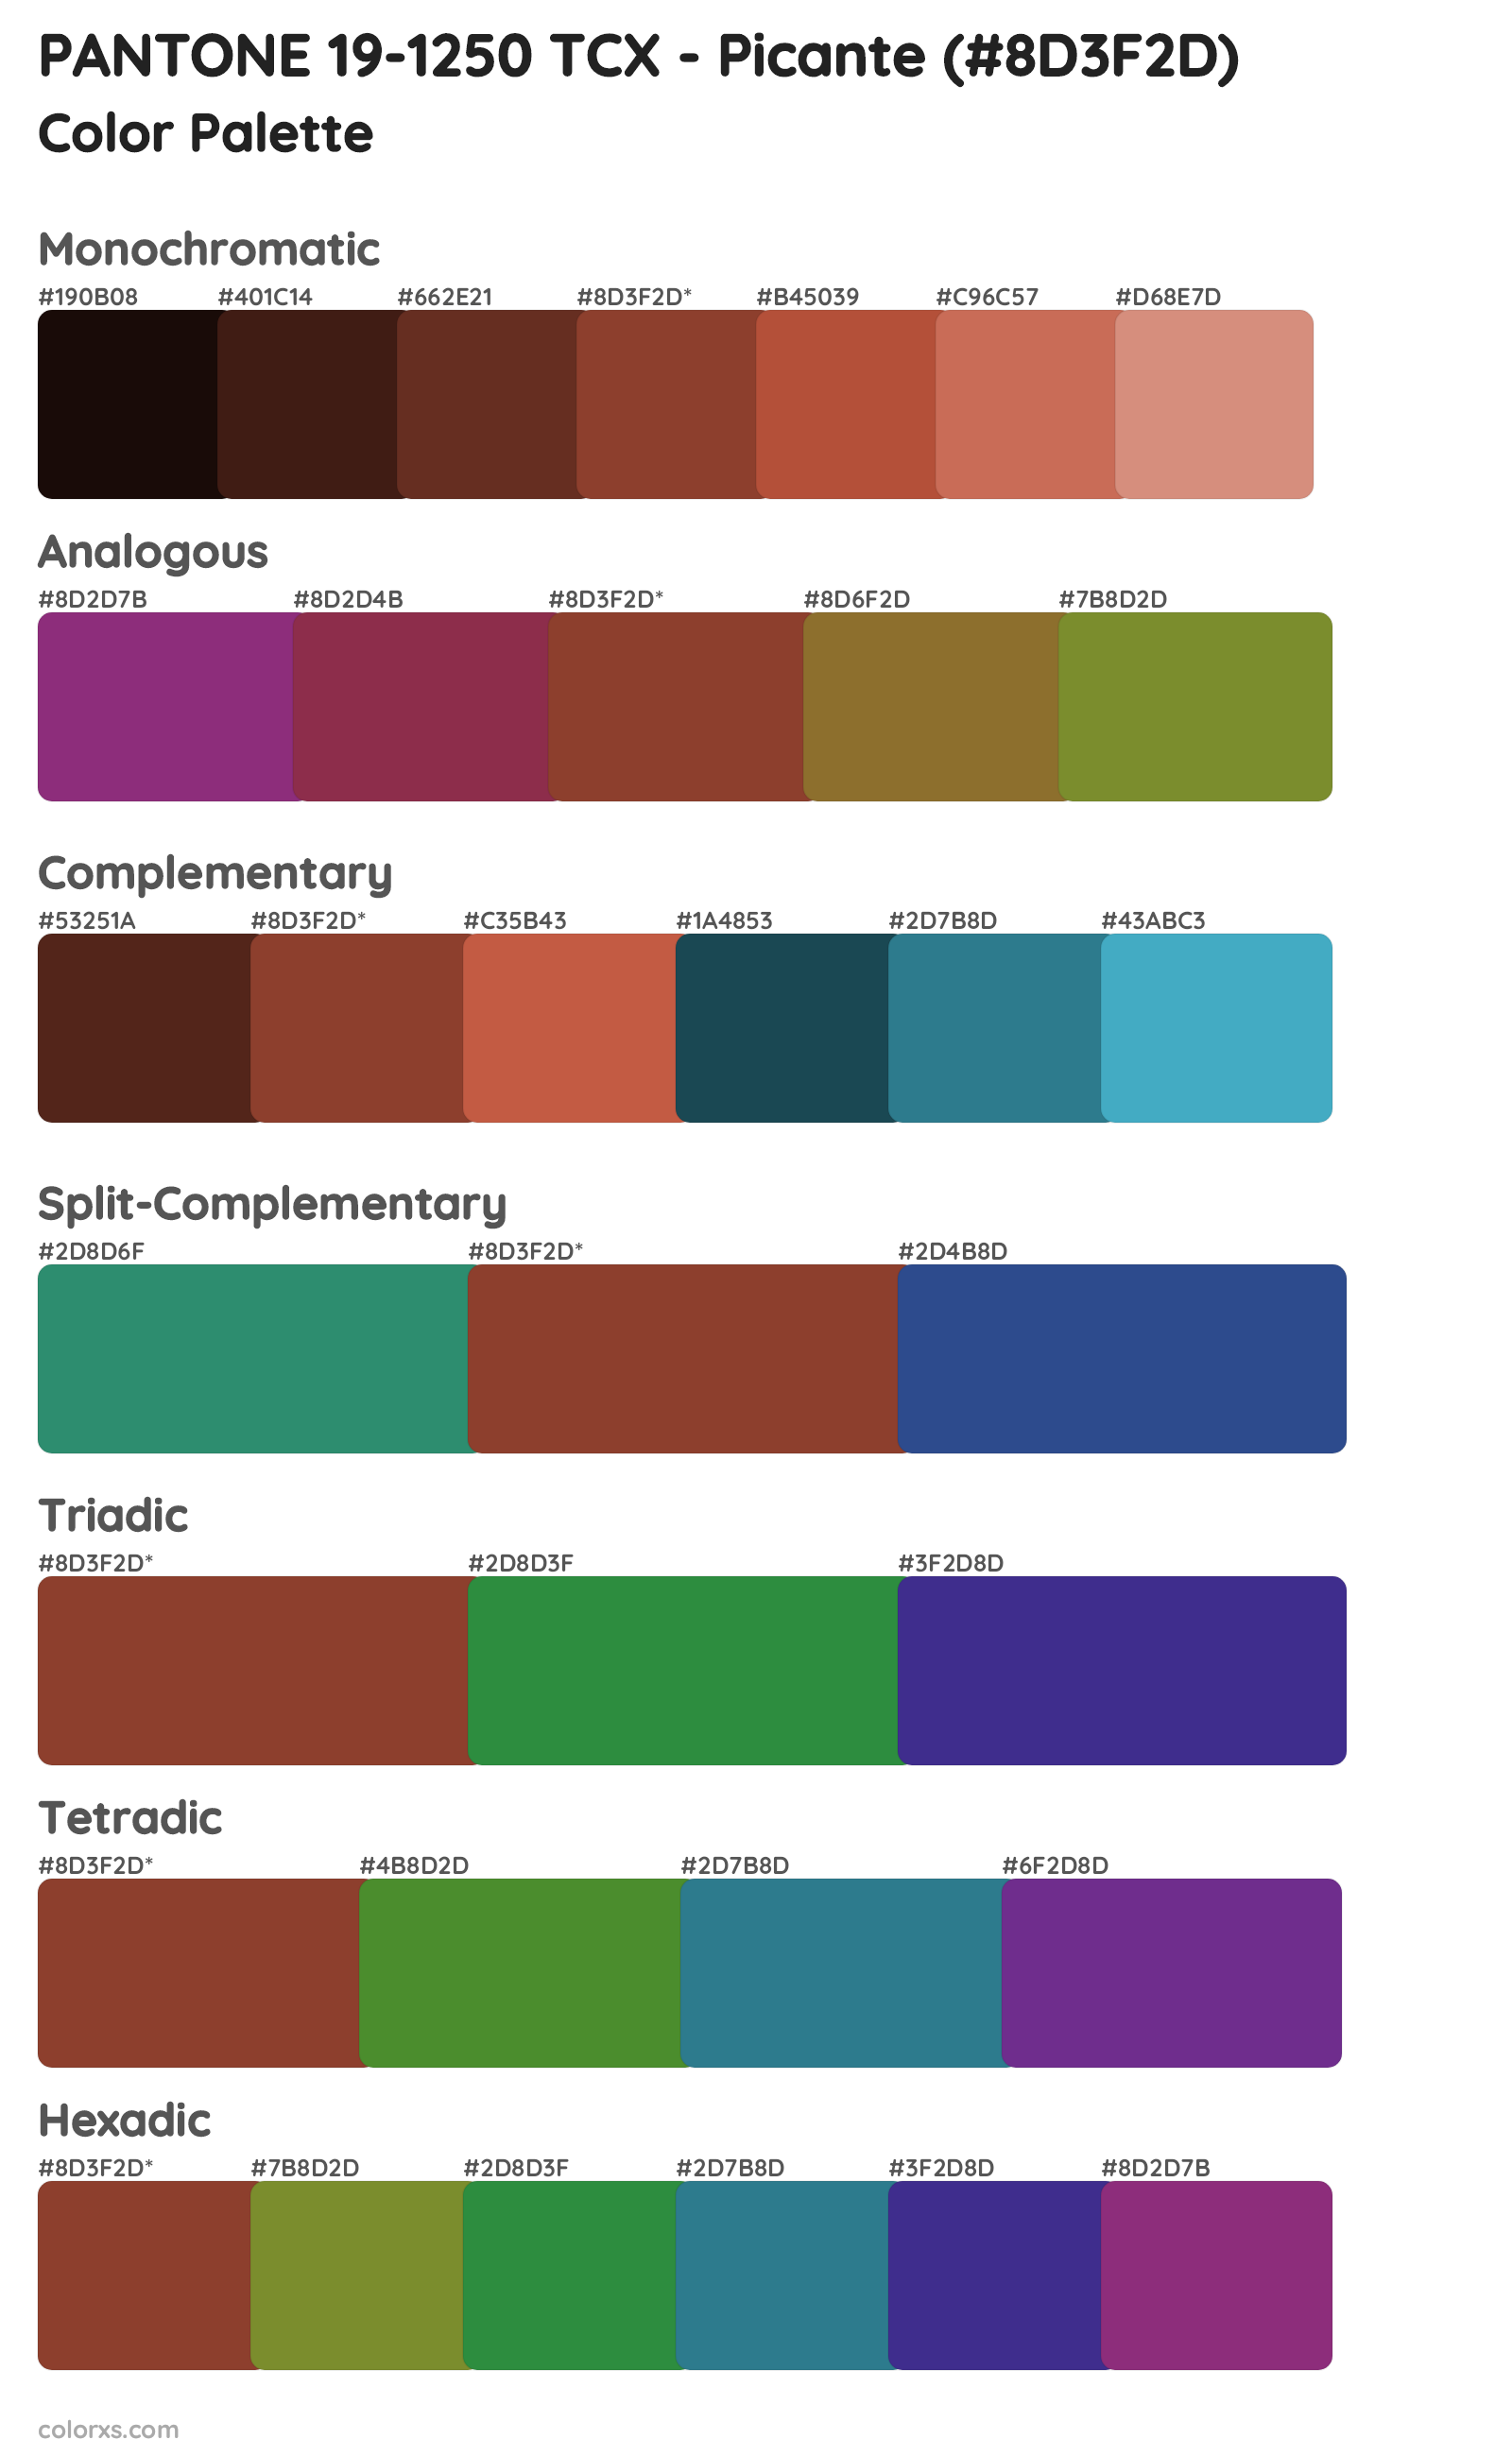 PANTONE 19-1250 TCX - Picante Color Scheme Palettes